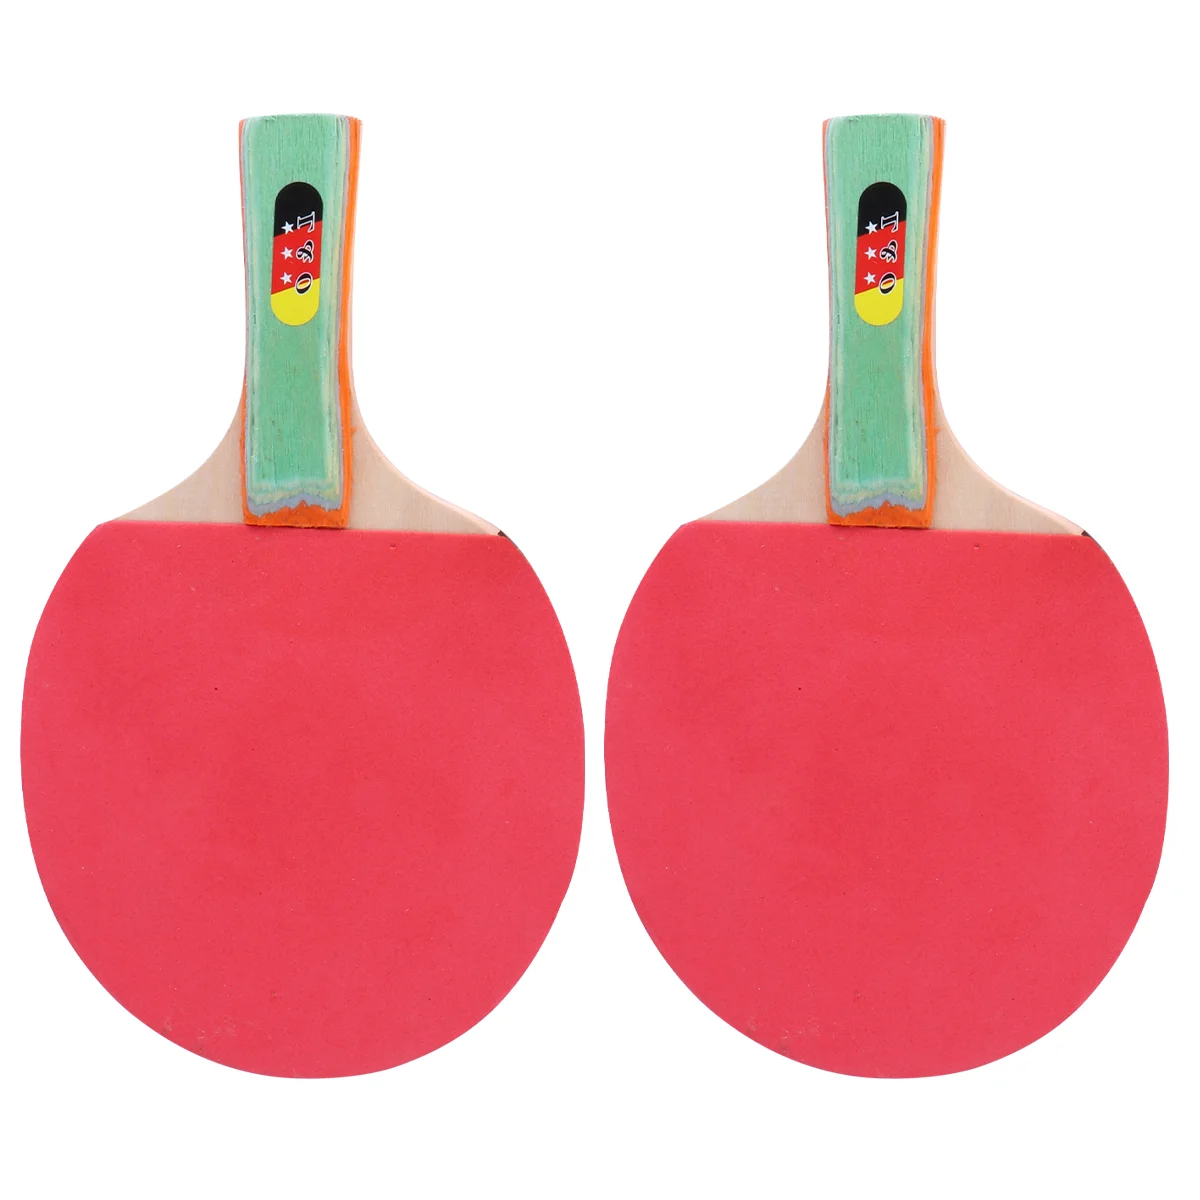 

Набор ракеток для настольного тенниса, комплект ракеток для настольного тенниса для взрослых и детей (2 горизонтальных и прямых ракетки + 3 мяча), 1 набор